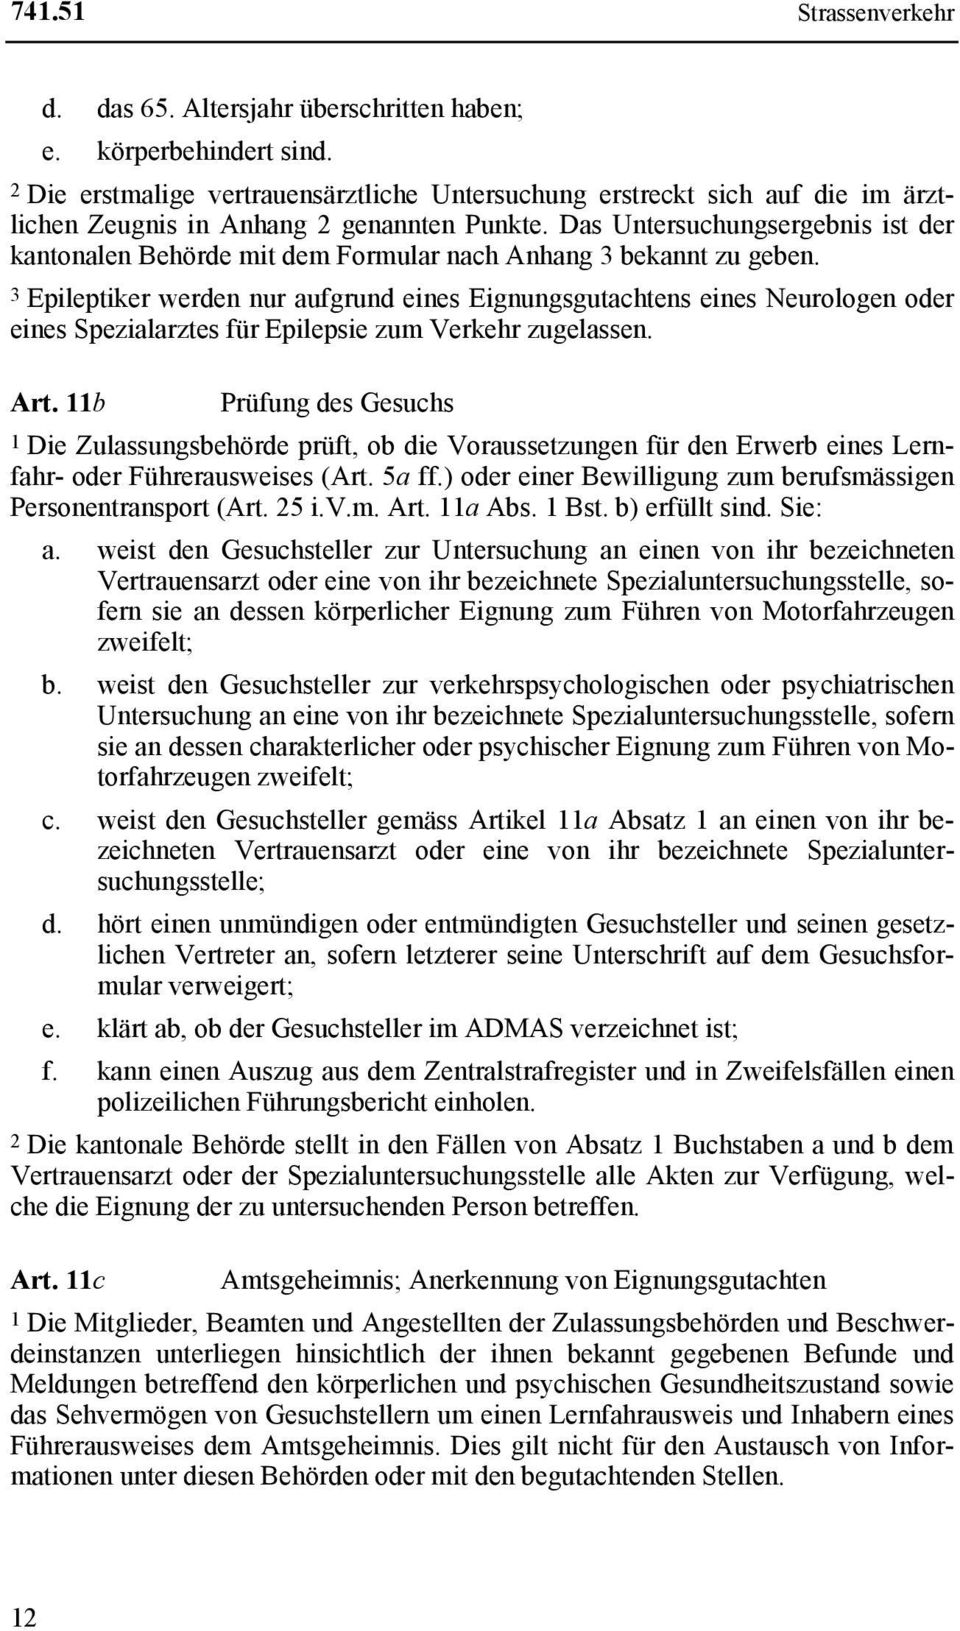 Das Untersuchungsergebnis ist der kantonalen Behörde mit dem Formular nach Anhang 3 bekannt zu geben.